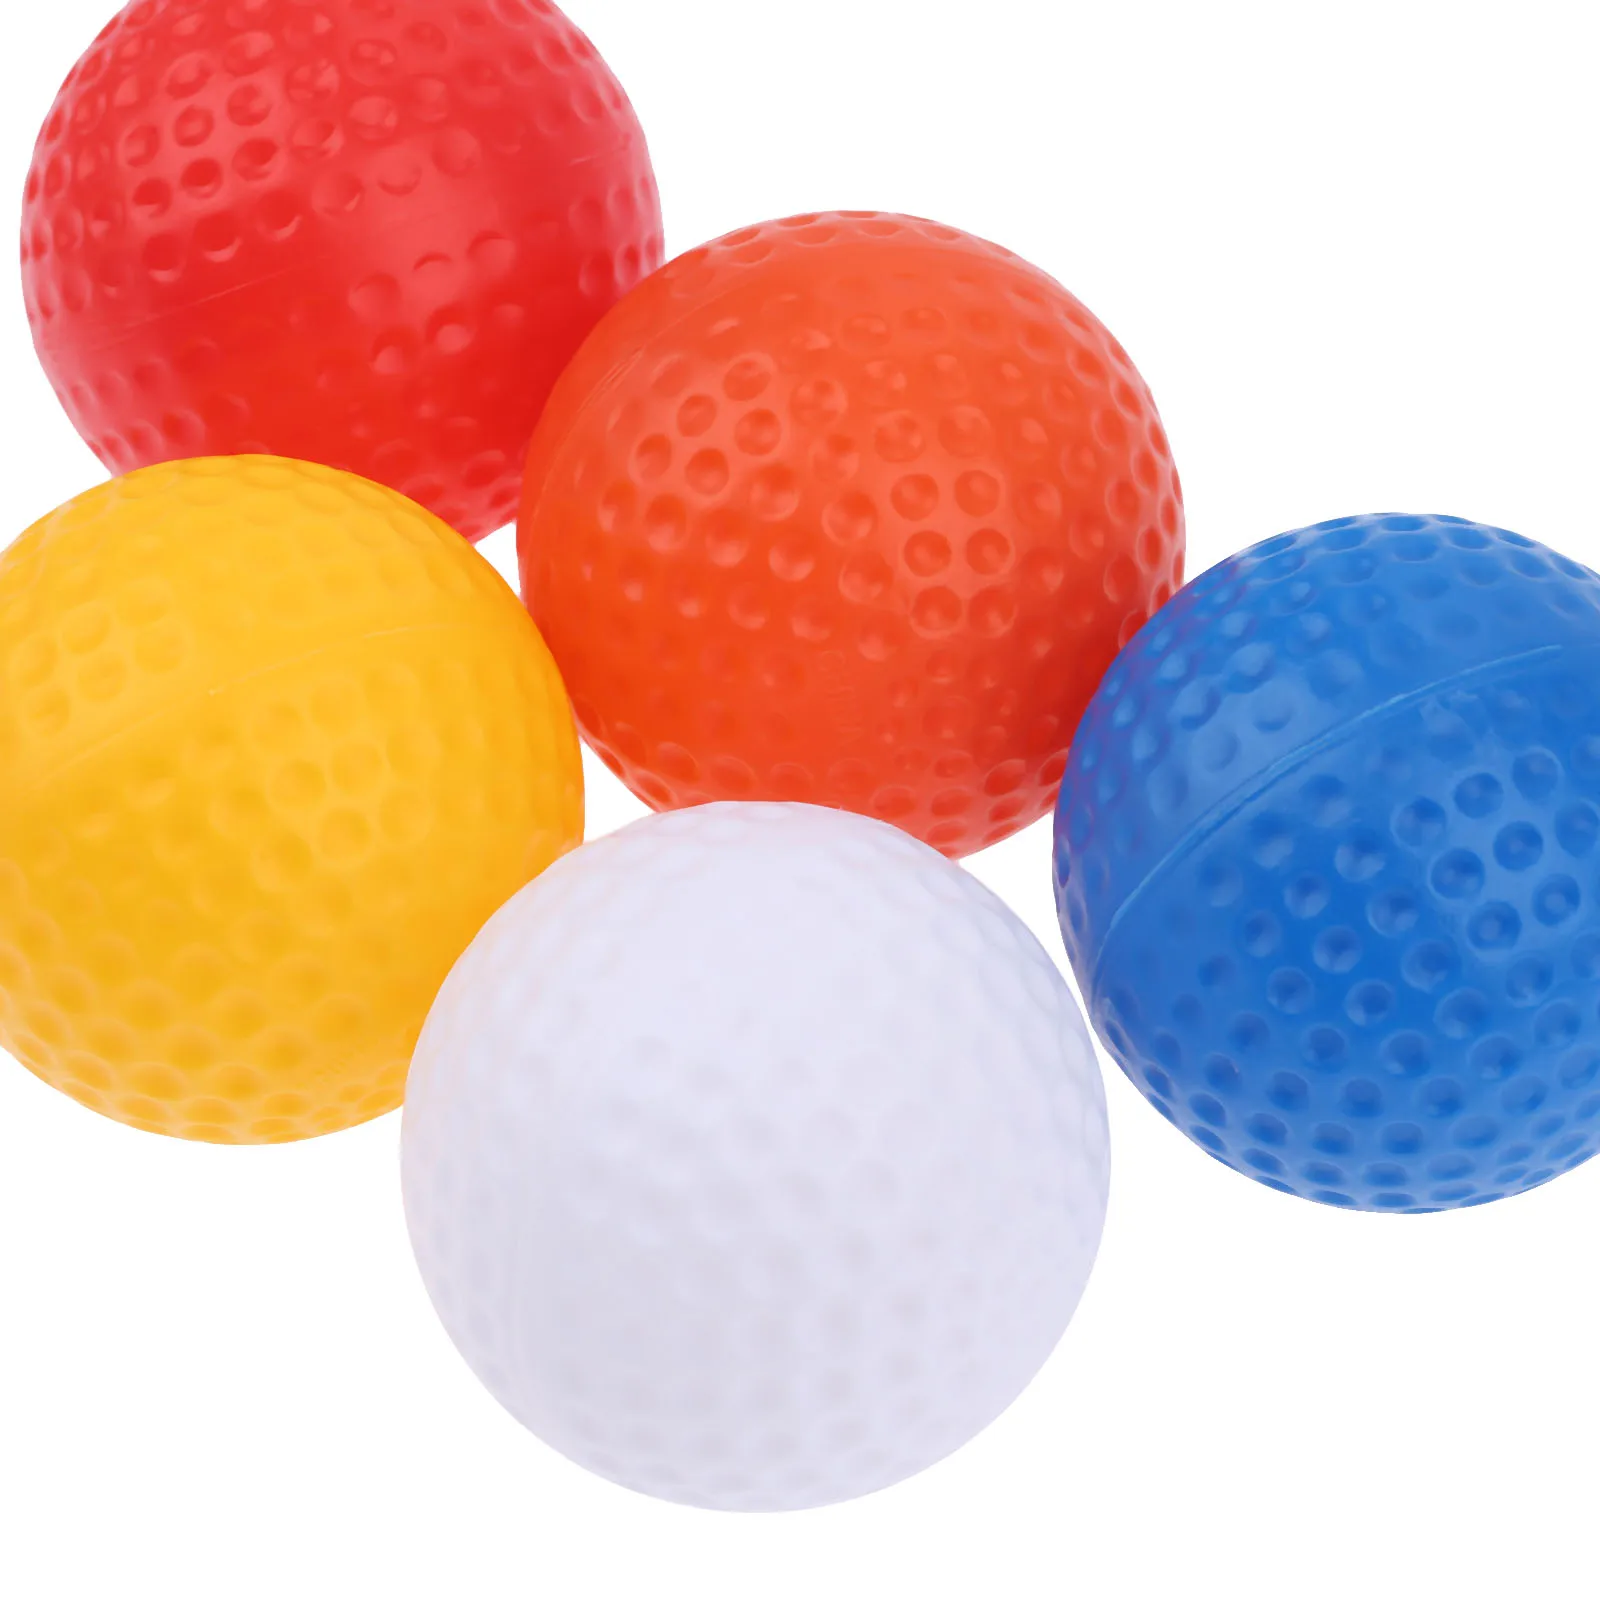 10 шт. 41 мм Пластик Мячи для гольфа для внутреннего Спорт на открытом воздухе Гольф Мячи 5 цветов Training Гольф полые шары без отверстий